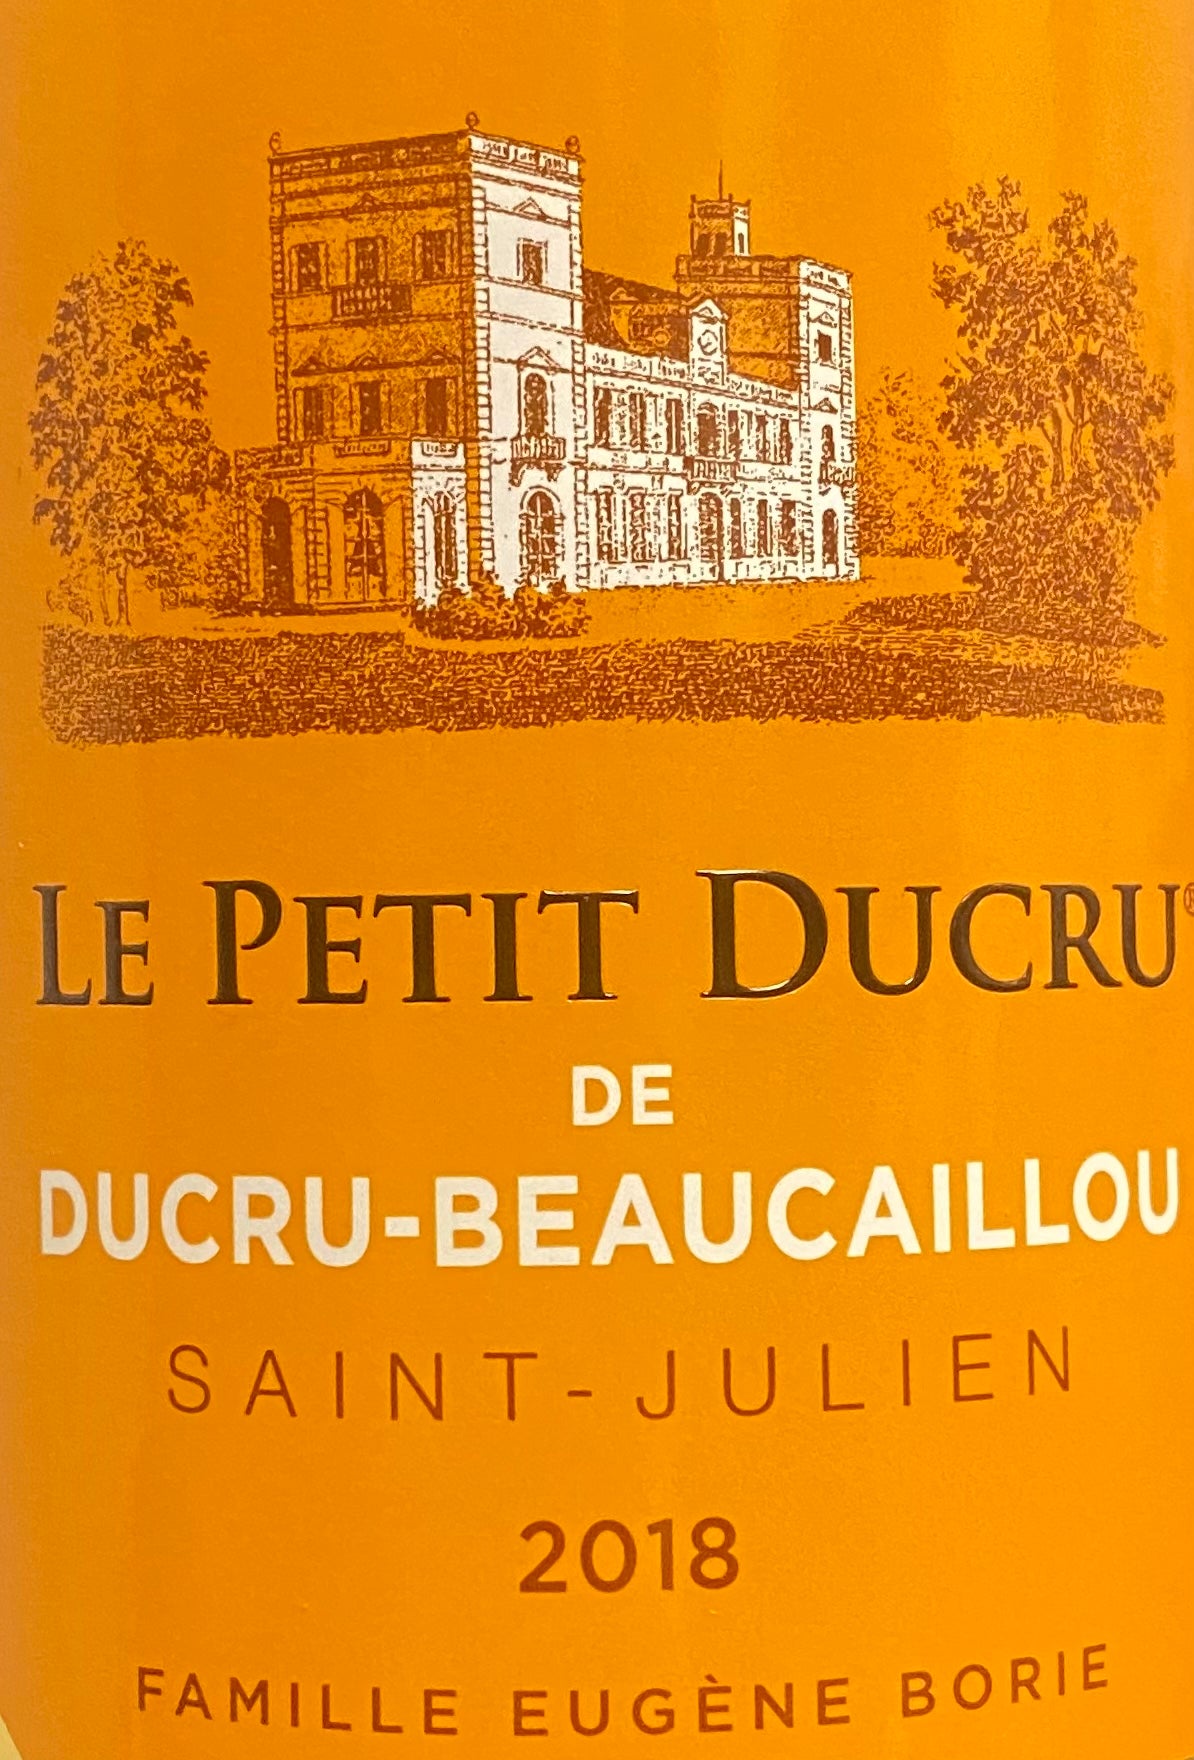 Le Petit Ducru Beaucaillou - Saint-Julien 2018